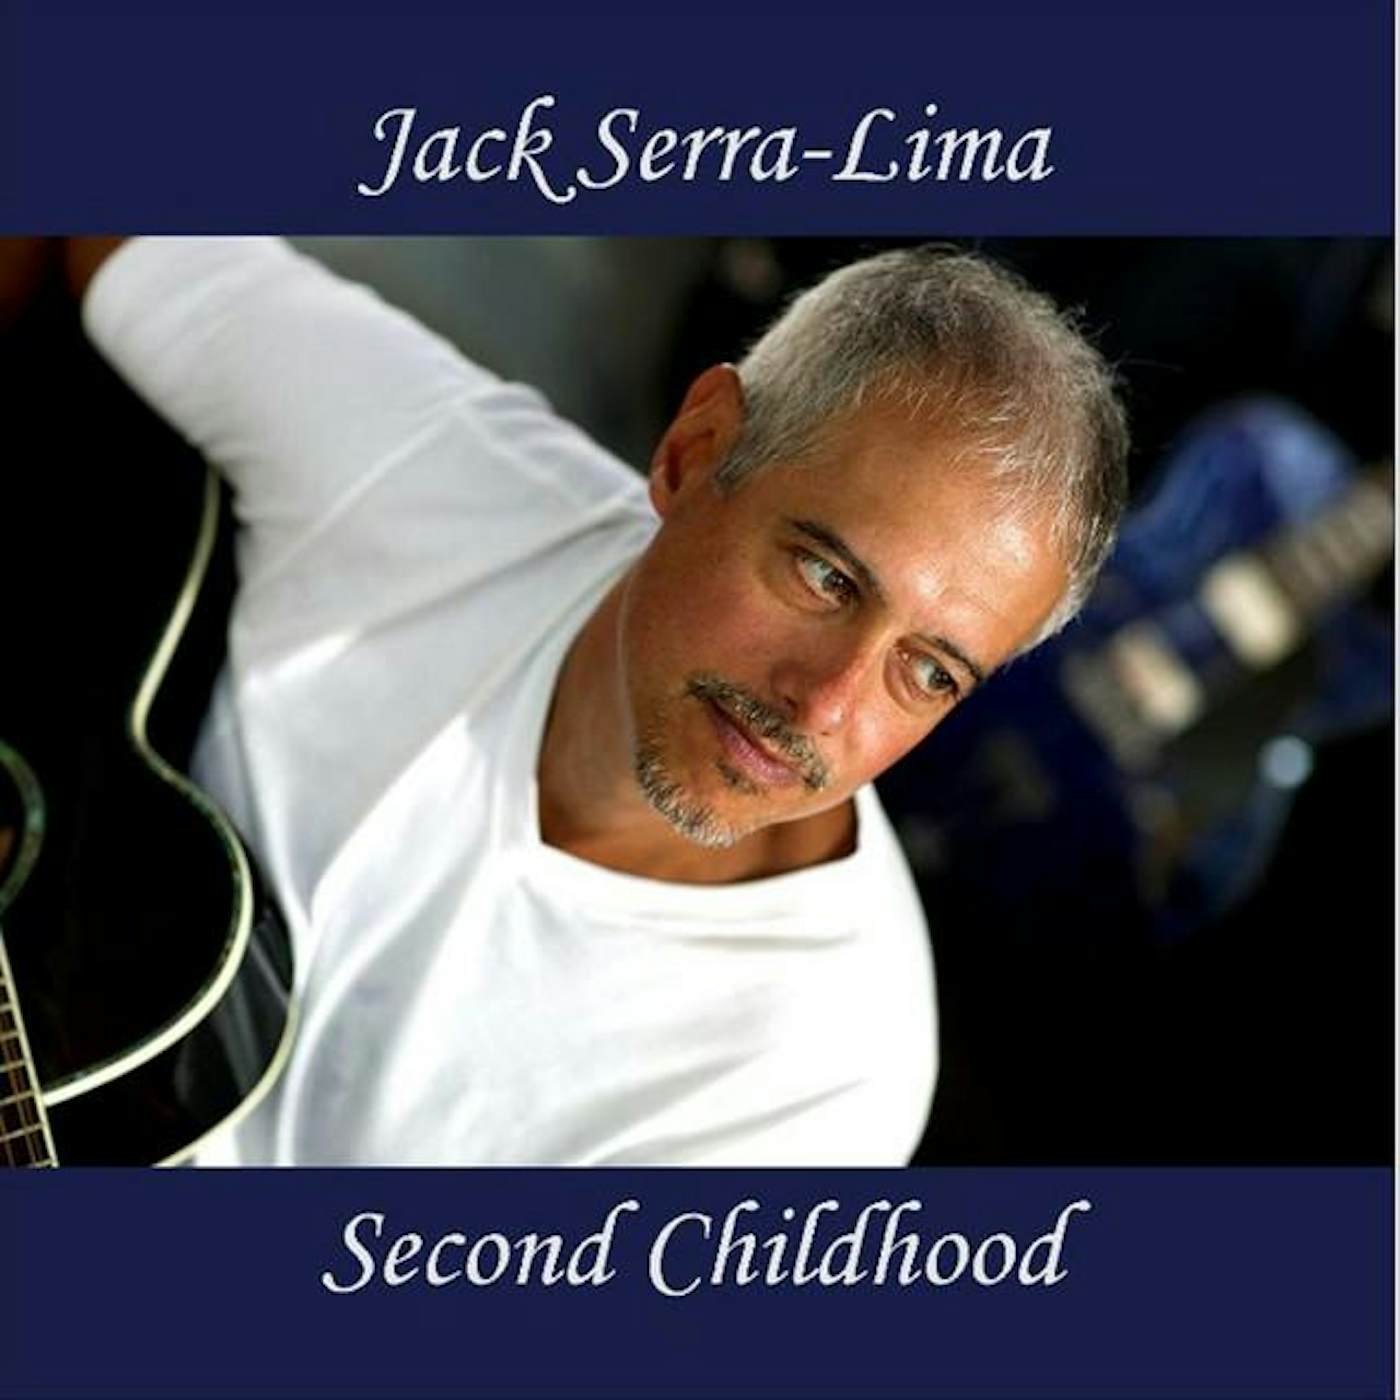 Jack Serra-Lima